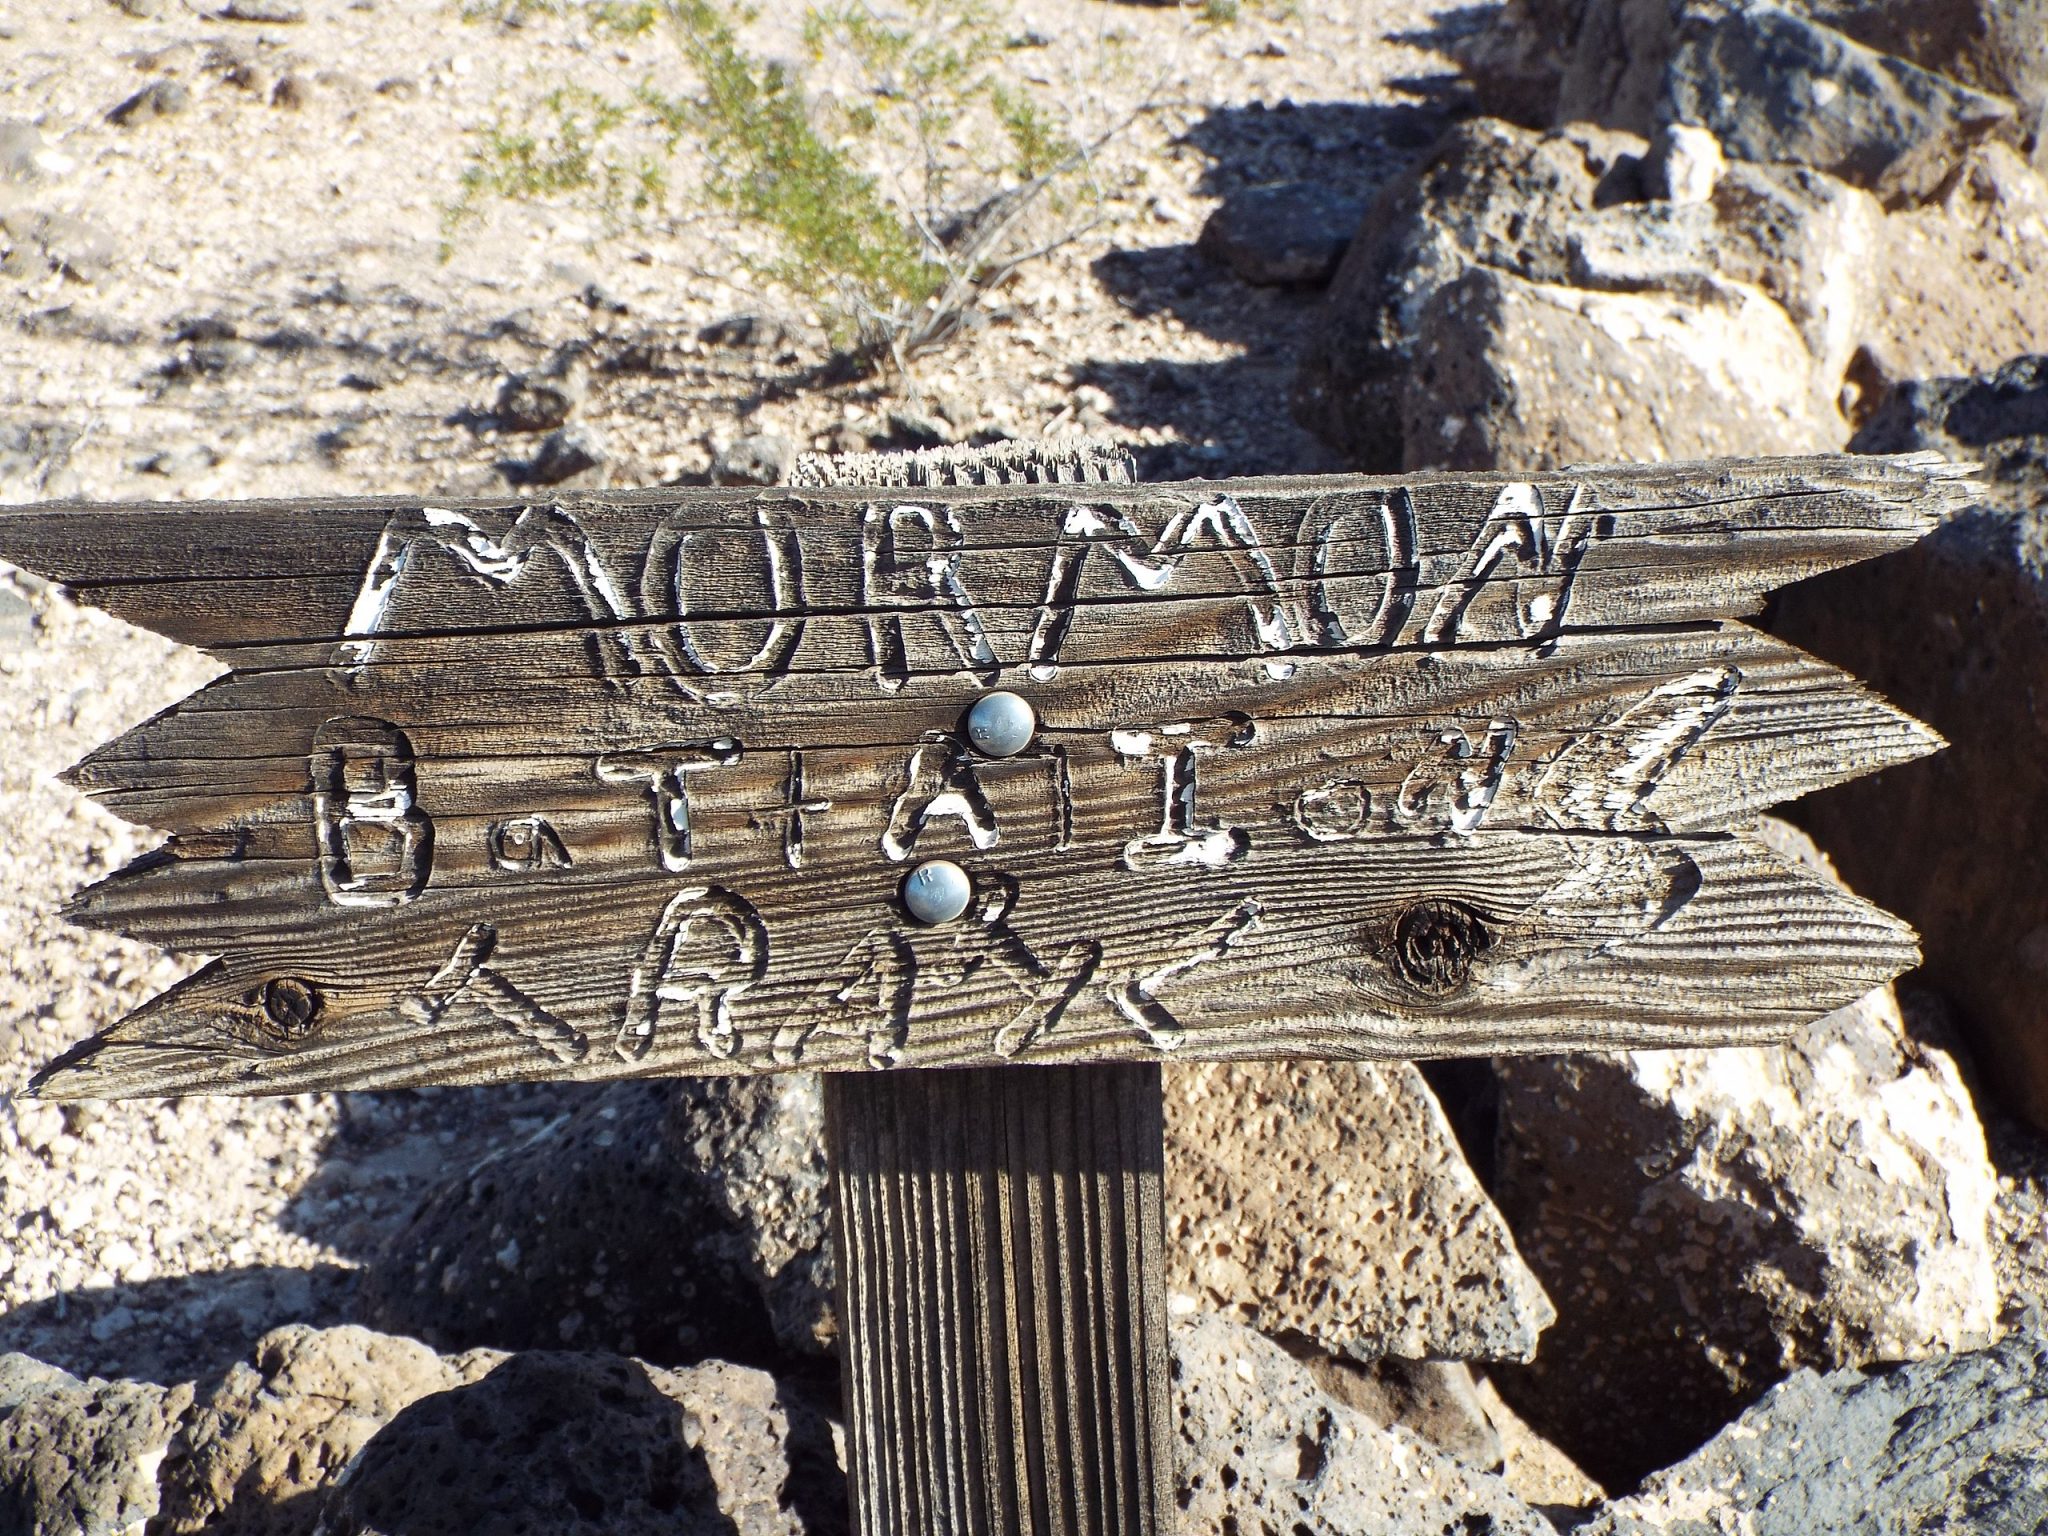 Mormon Battalion trail marker